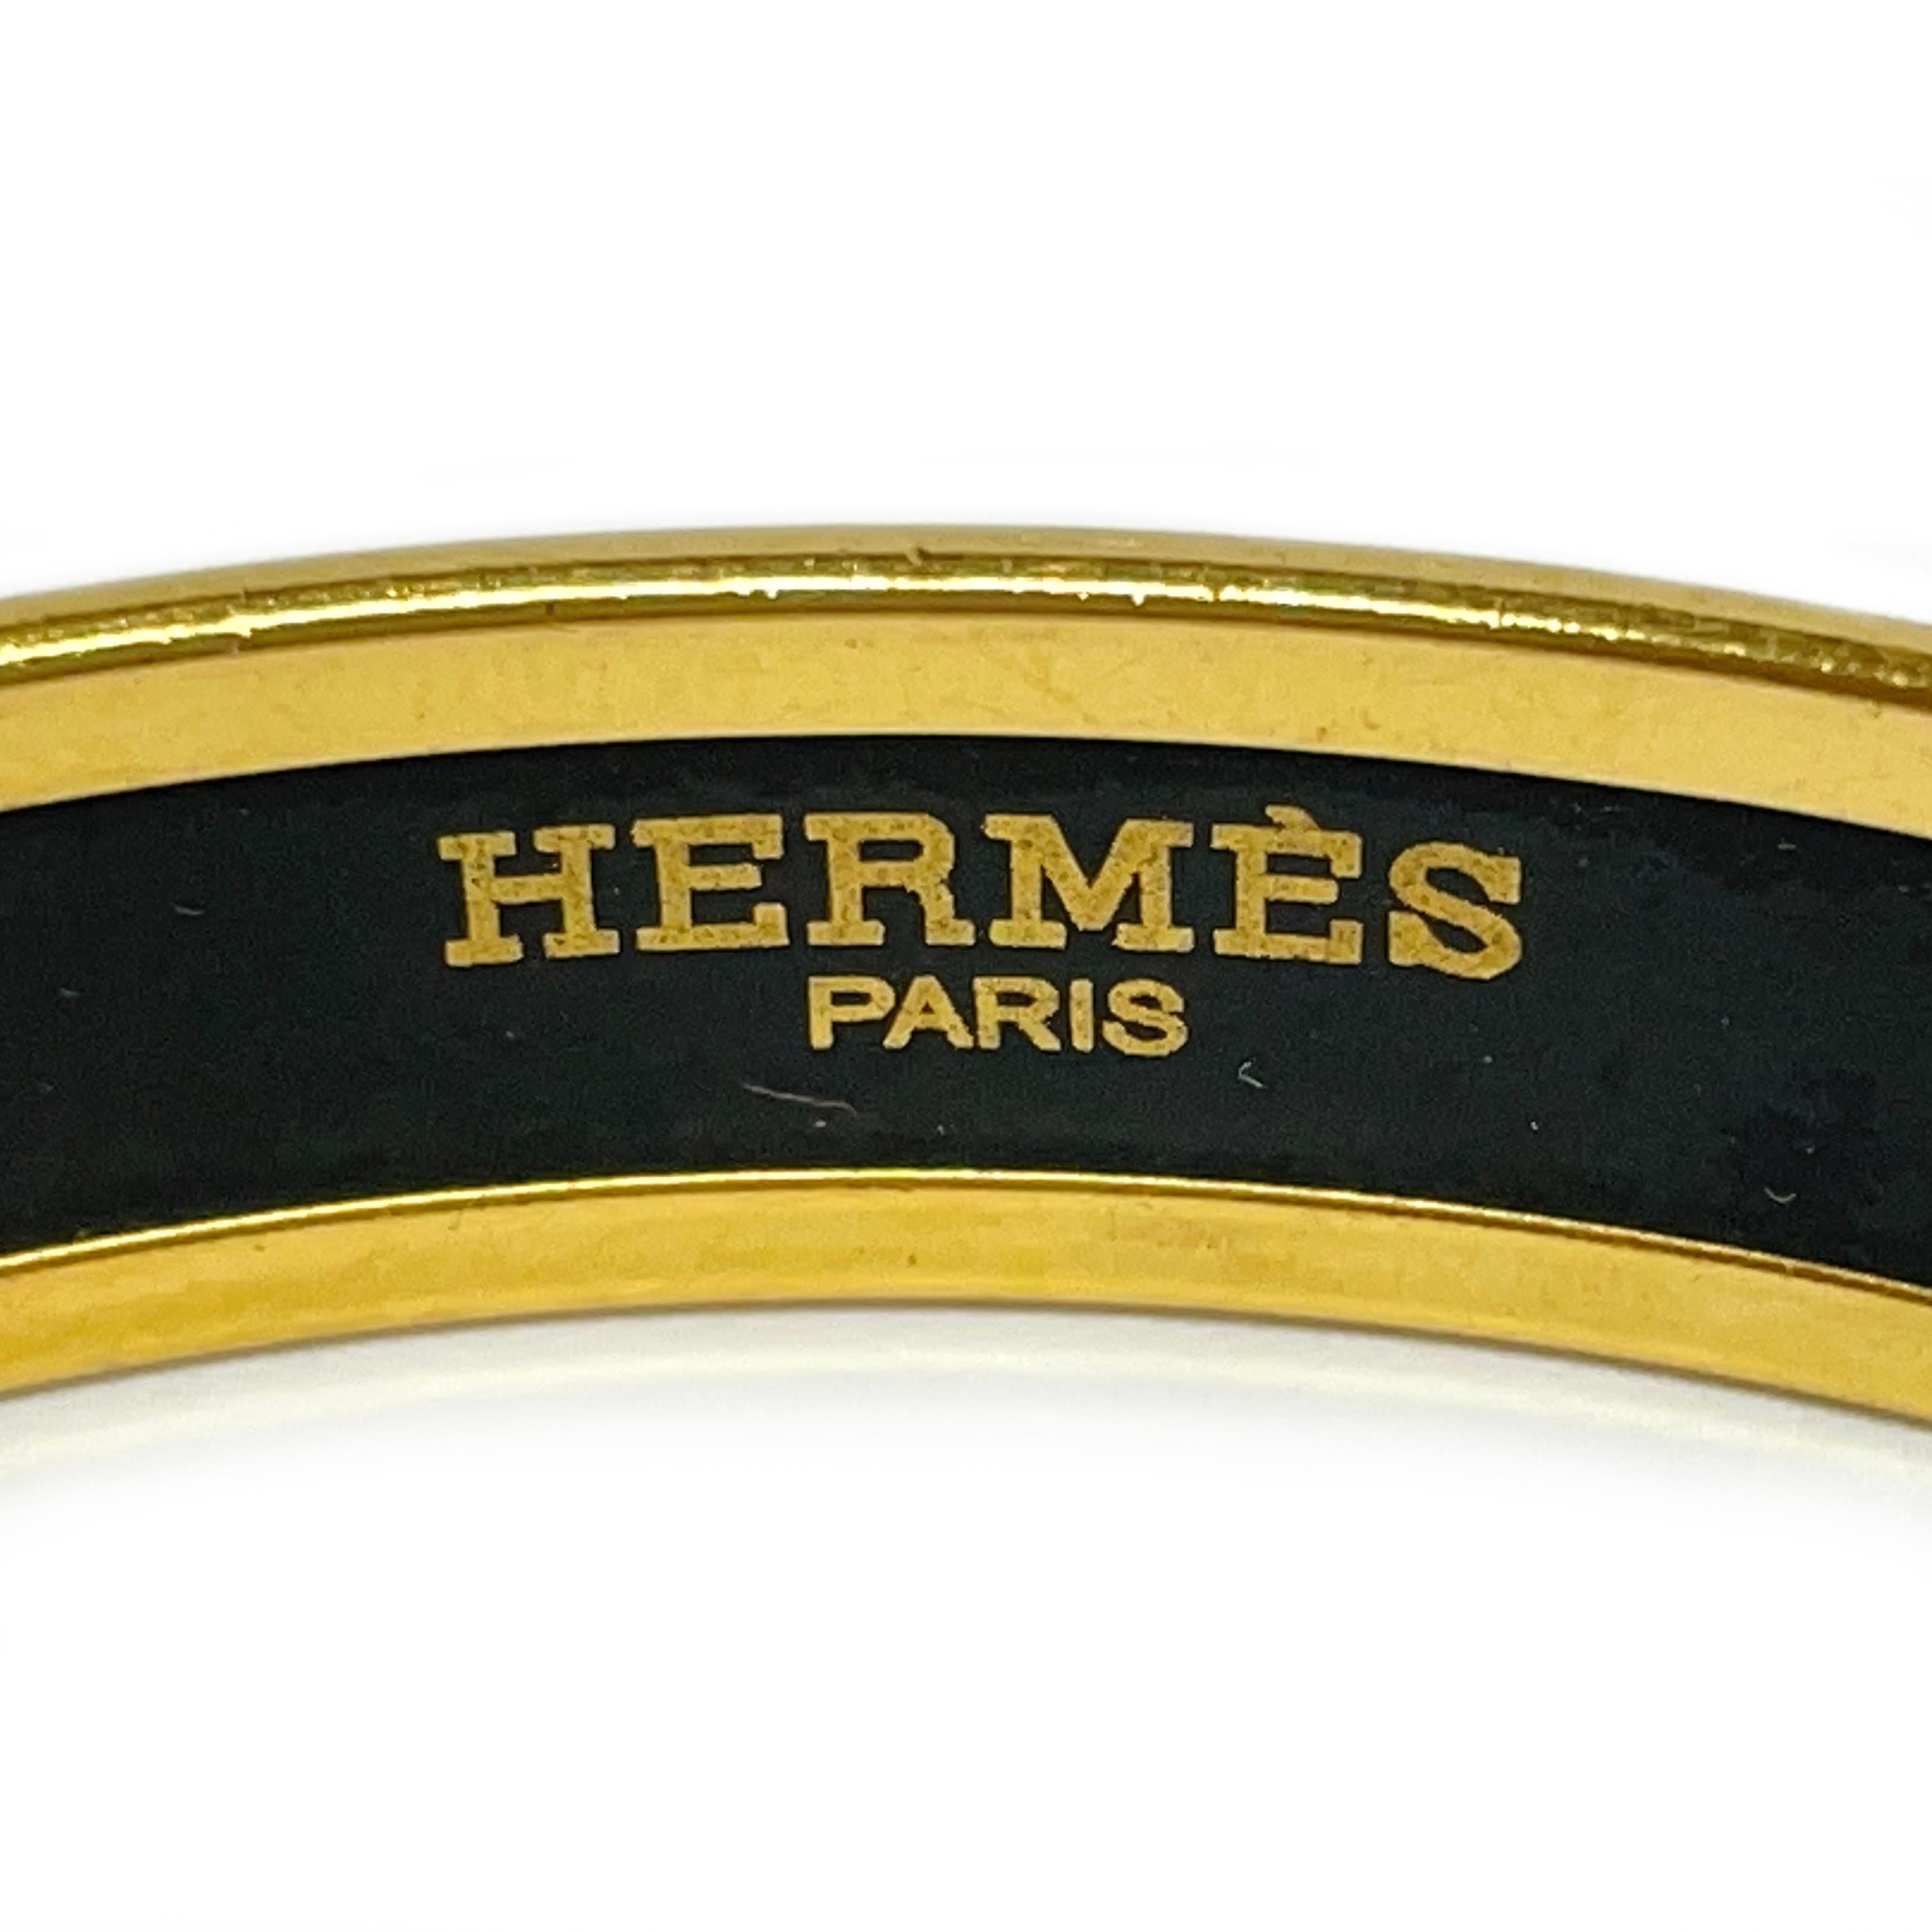 Bracelet Hermes Fan Grand Alpala en émail cloisonné noir et plaqué or. Ce bracelet chic présente les motifs classiques d'Hermès : corde, pampilles et fleur de lys. Le bracelet présente une finition entièrement lisse. Le bracelet mesure 10,4 mm de